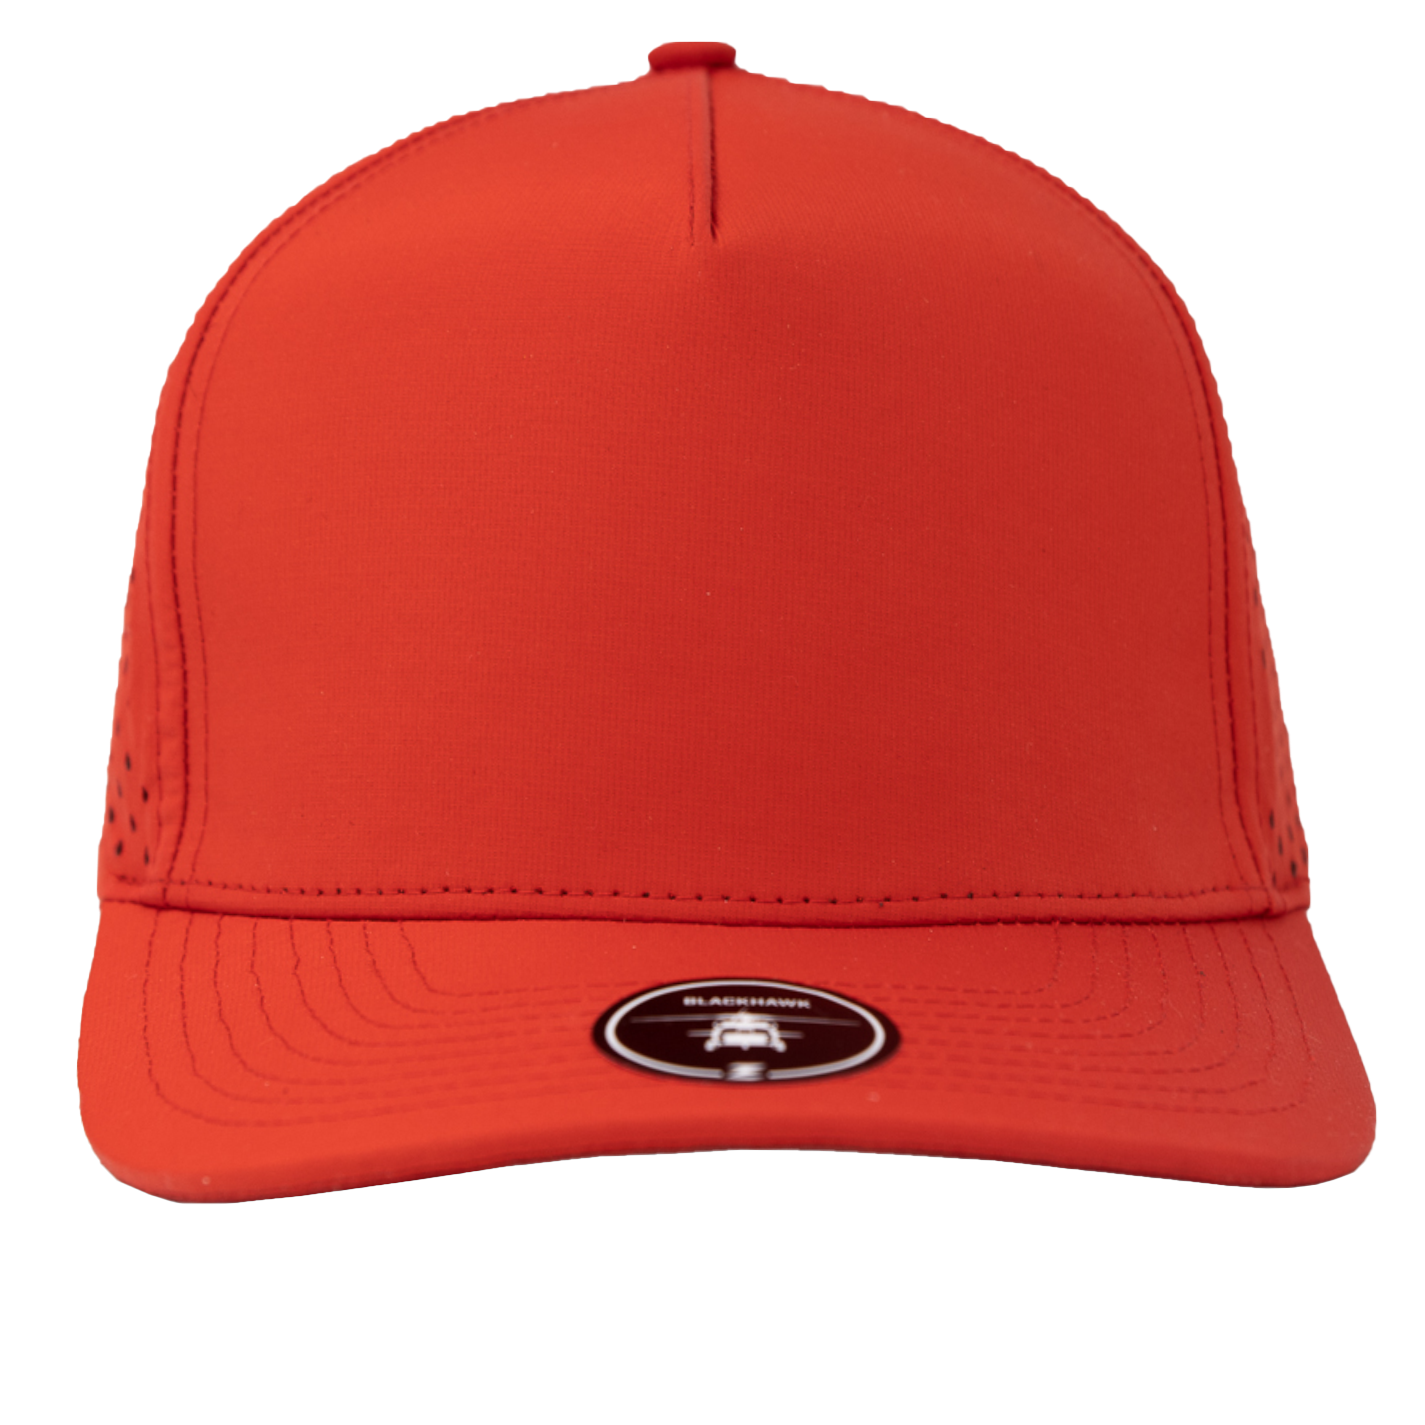 BLACKHAWK- Custom Hat Water Repellent hat-Zapped Headwear-cardinal-red-Zapped Headwear